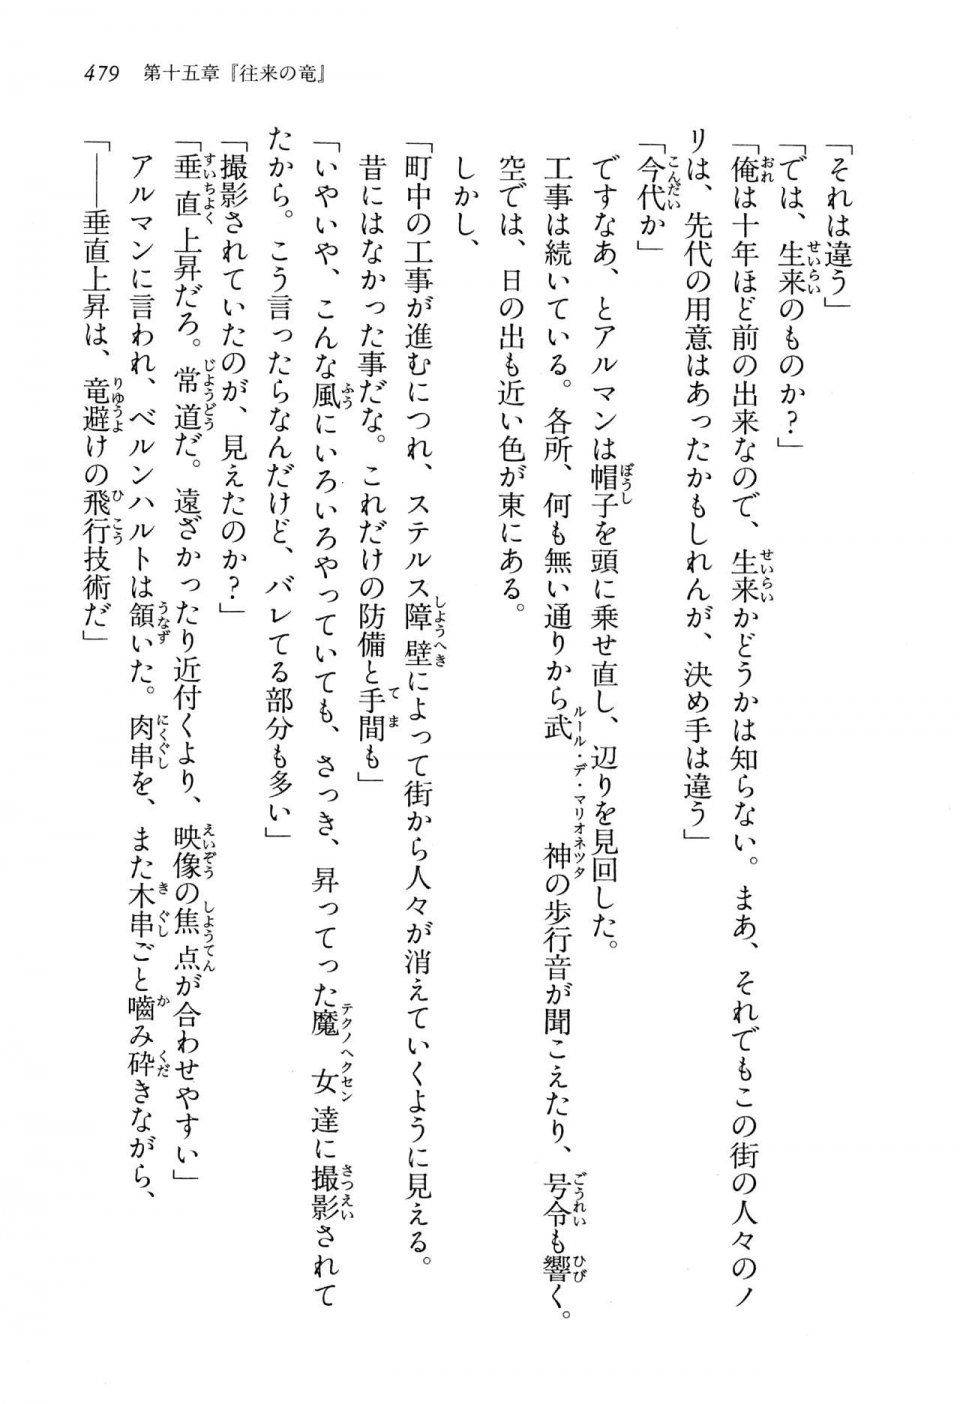 Kyoukai Senjou no Horizon LN Vol 13(6A) - Photo #479